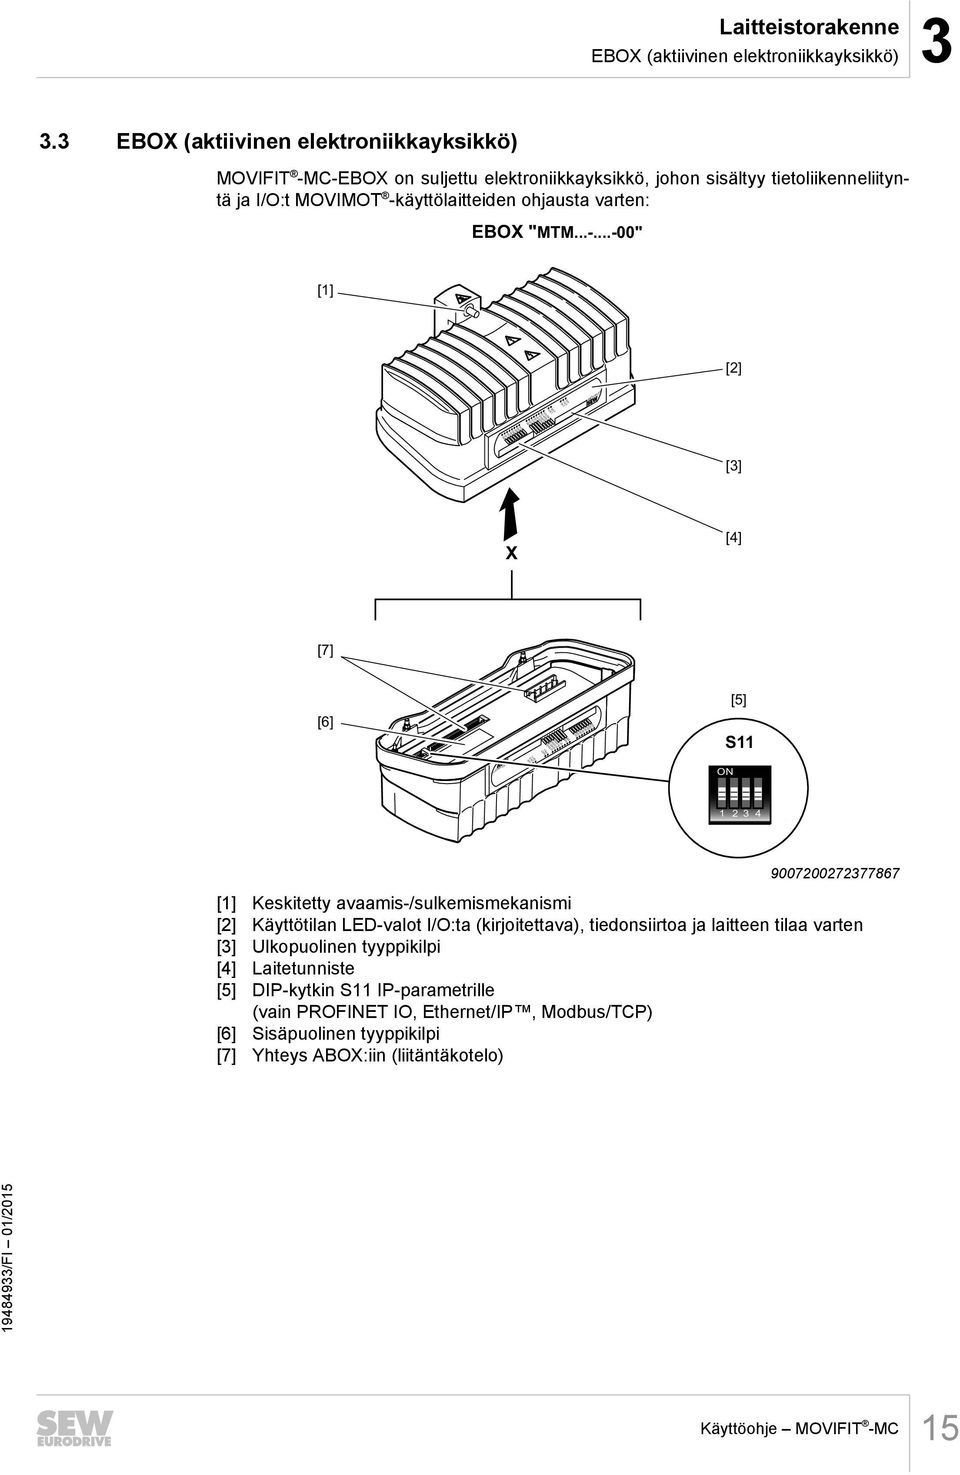 C-EBOX on suljettu elektroniikkayksikkö, johon sisältyy tietoliikenneliityntä ja I/O:t MOVIMOT -käyttölaitteiden ohjausta varten: EBOX "MTM...-...-00" [1] [2] RUN 24V-S 24V-C MOVIFIT DI15/Do03